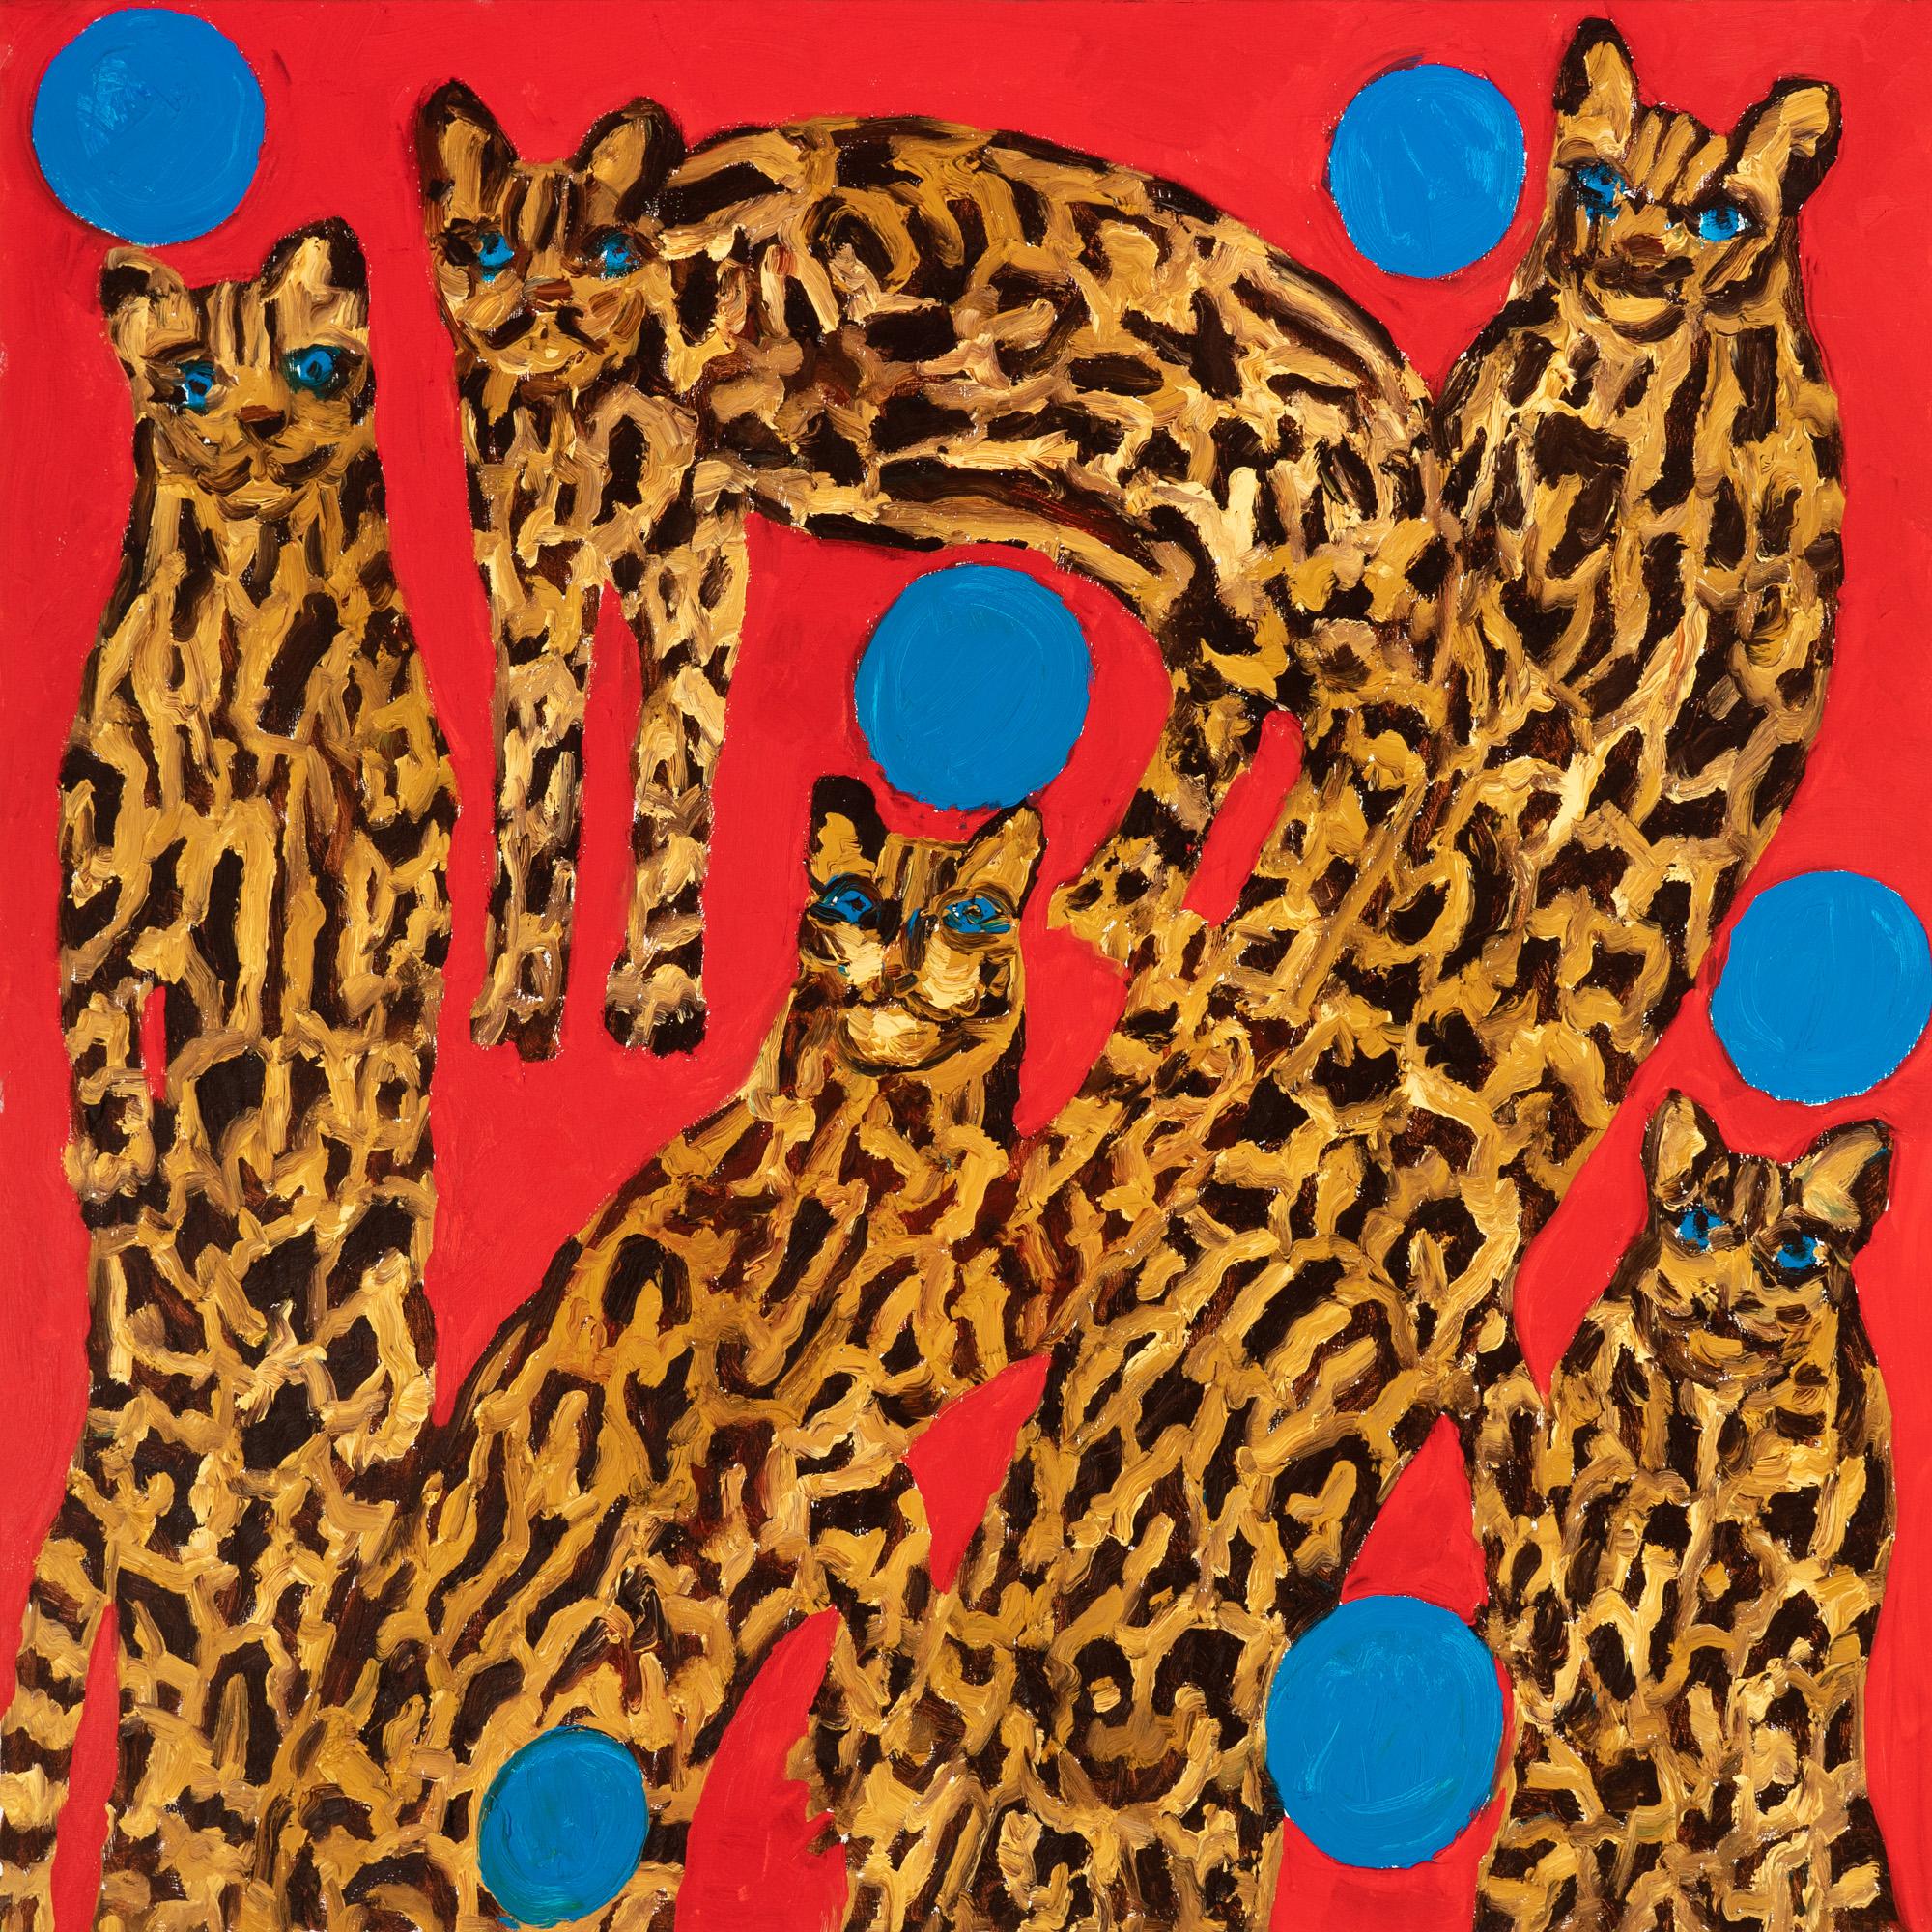 "Ocelots" est une peinture à l'huile sur toile non encadrée de Hunt Slonem, représentant un groupe d'ocelots avec 6 boules bleues flottantes sur un fond rouge. Les coups de pinceau expressifs de l'artiste et les couleurs primaires électriques